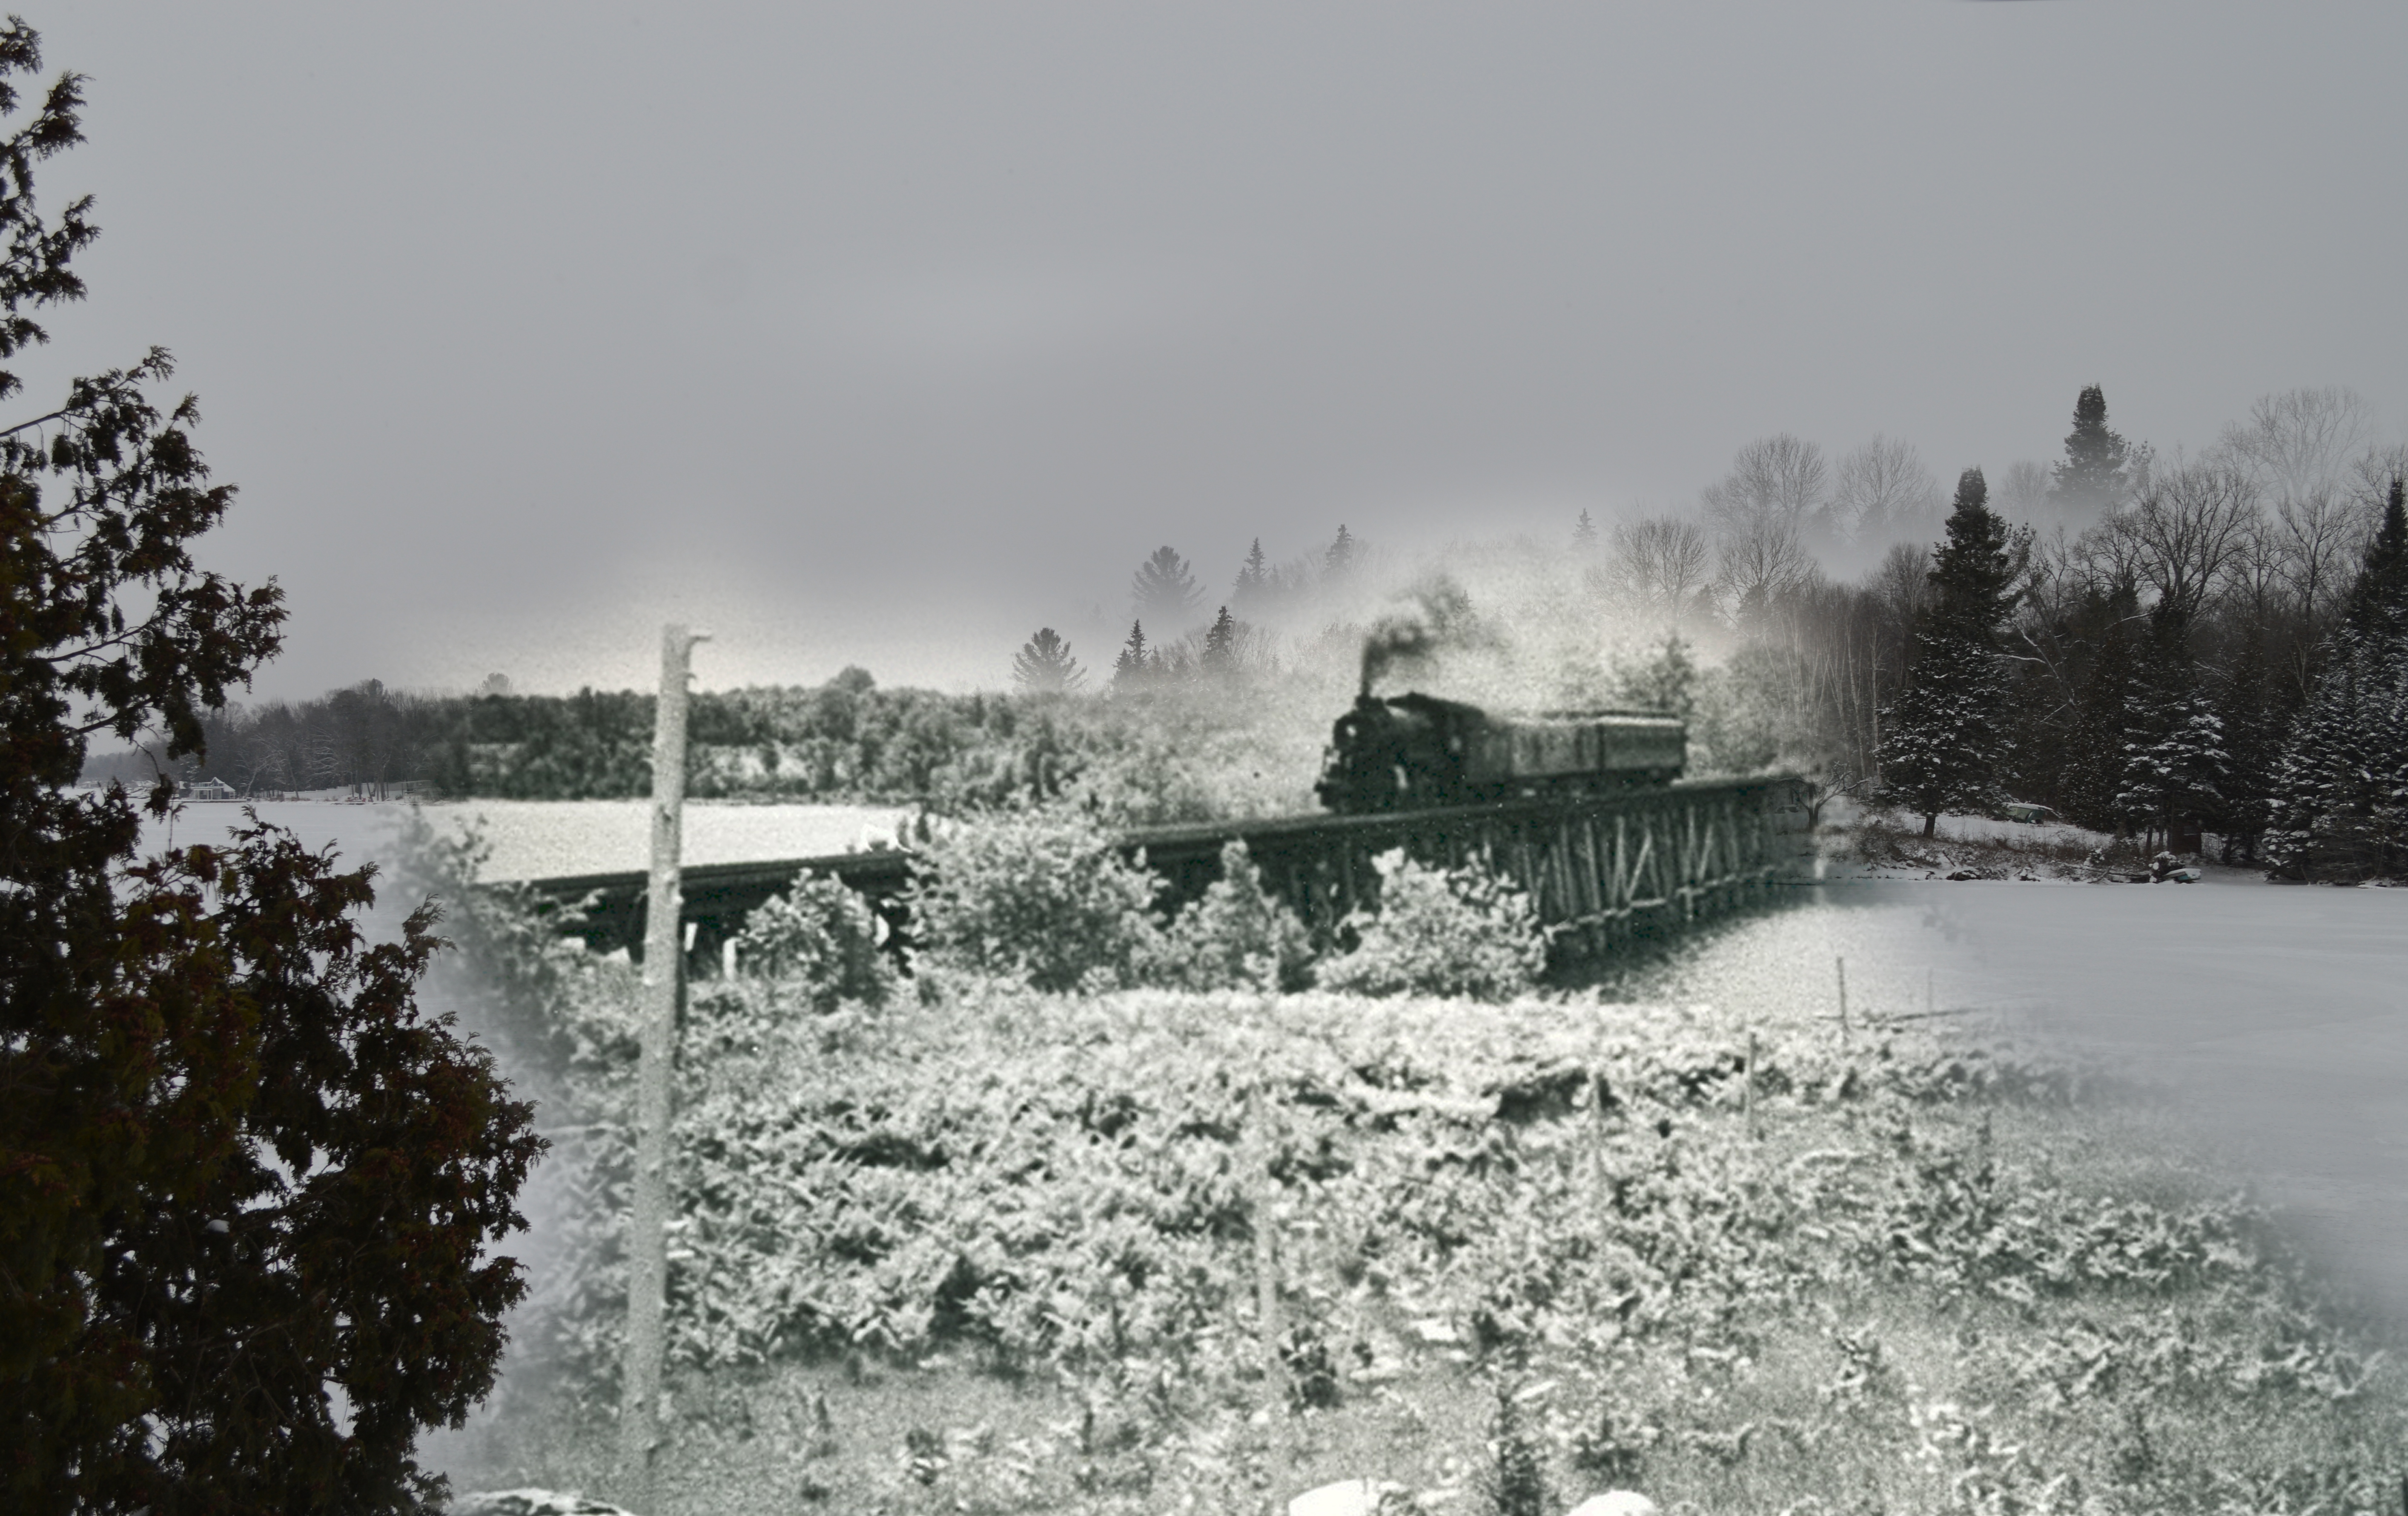 A B&W photo of a train crossing a bridge, with a superimposed contemporary winter scene.